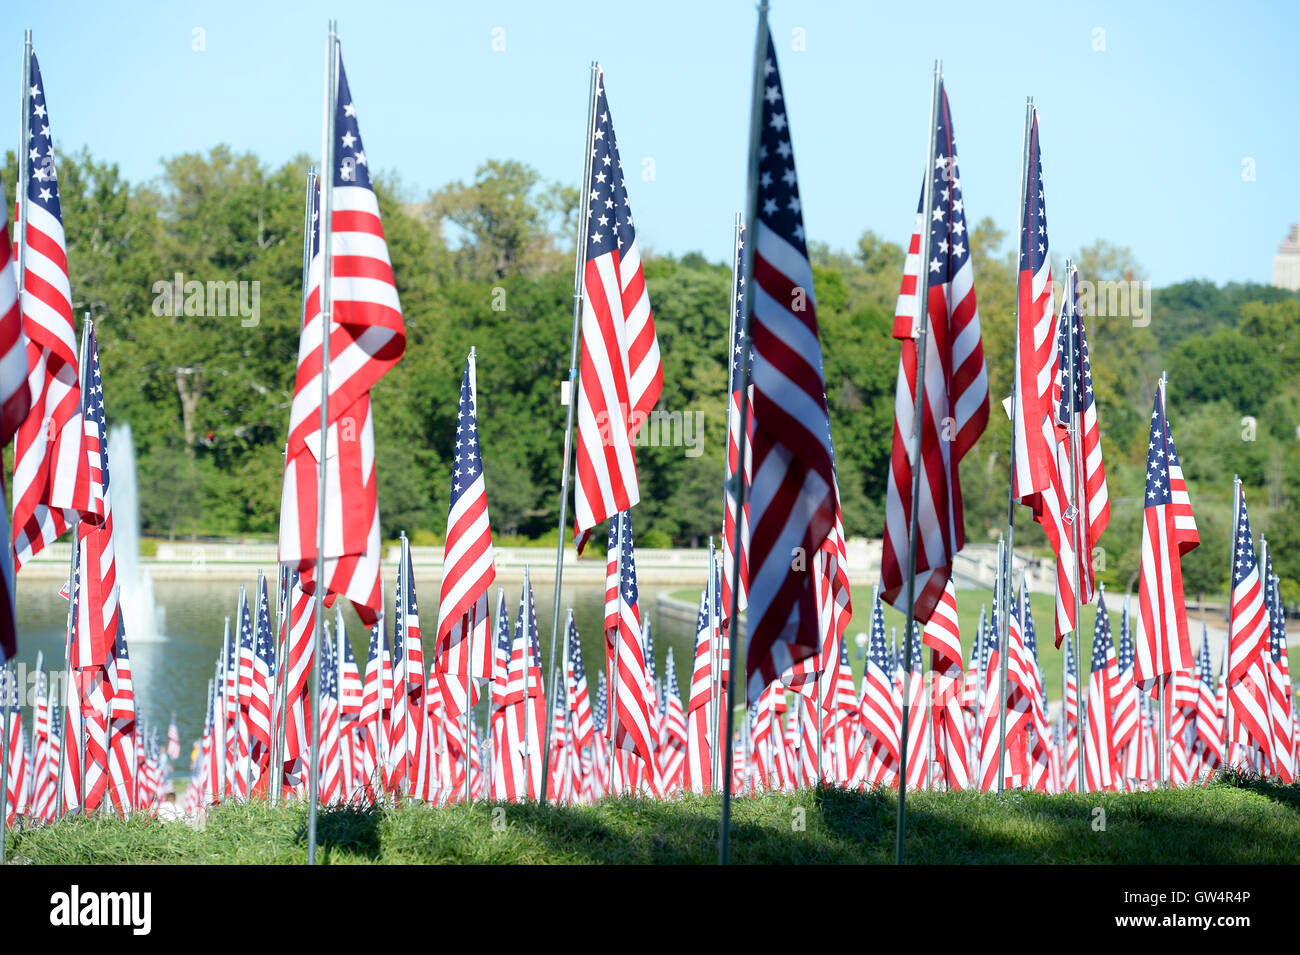 Saint Louis, MO - 11 septembre 2016 : plus de 7 000 drapeaux avec nom, photo et dog tag mort d'un militaire de la défense des États-Unis en dehors de la vague de Saint Louis Art Museum à Saint Louis, Missouri Crédit : Gino's Premium Images/Alamy Live News Banque D'Images